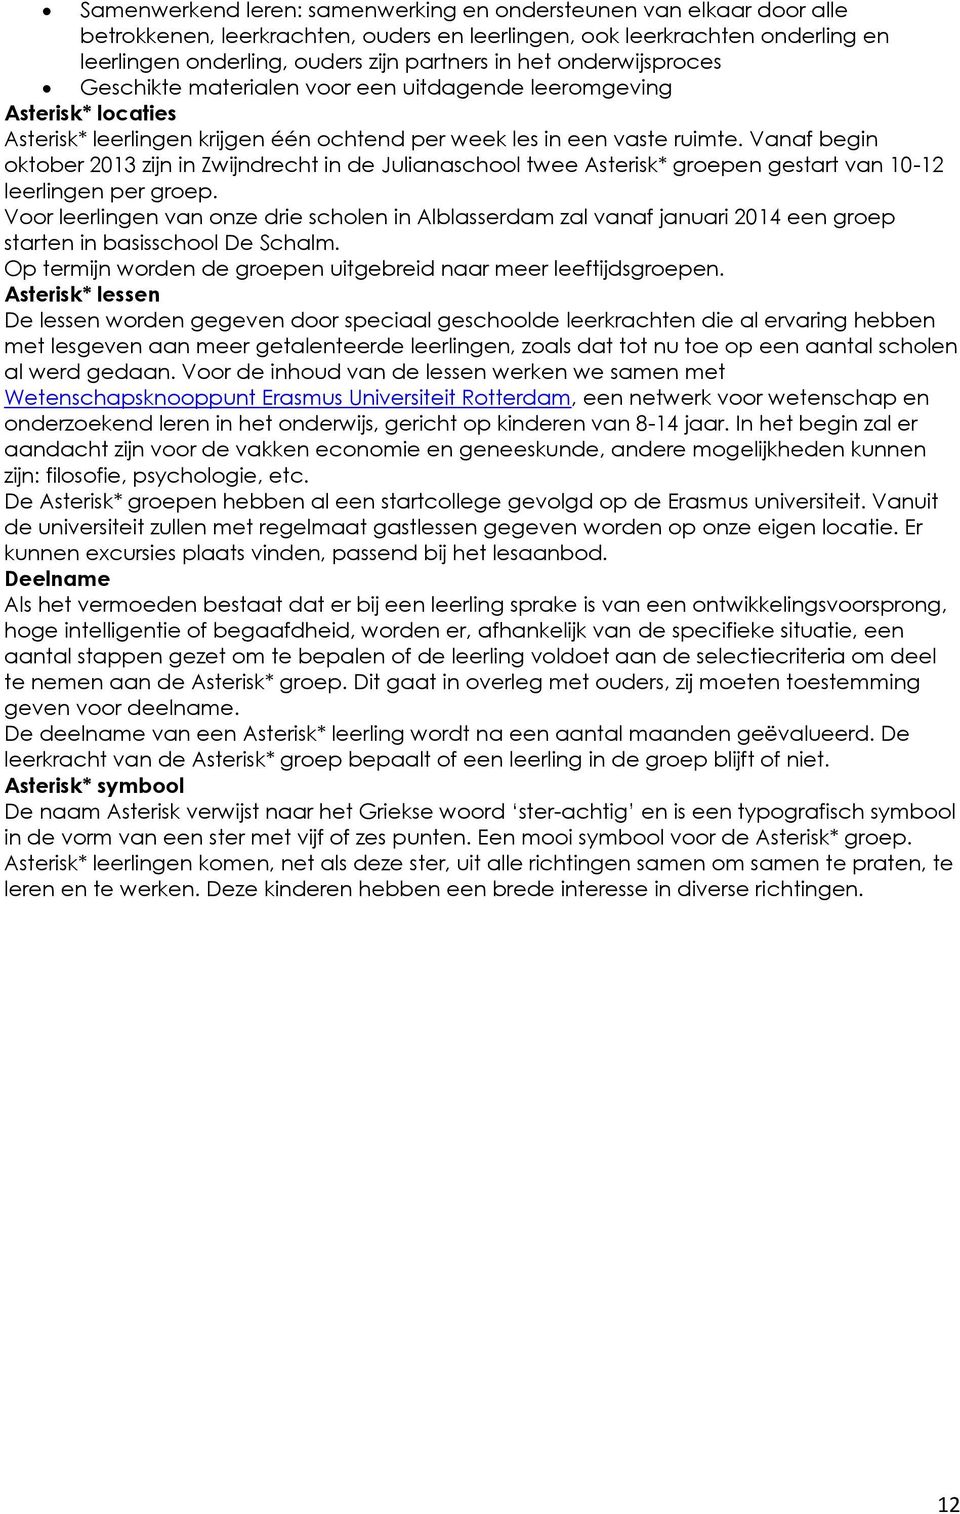 Vanaf begin oktober 2013 zijn in Zwijndrecht in de Julianaschool twee Asterisk* groepen gestart van 10-12 leerlingen per groep.